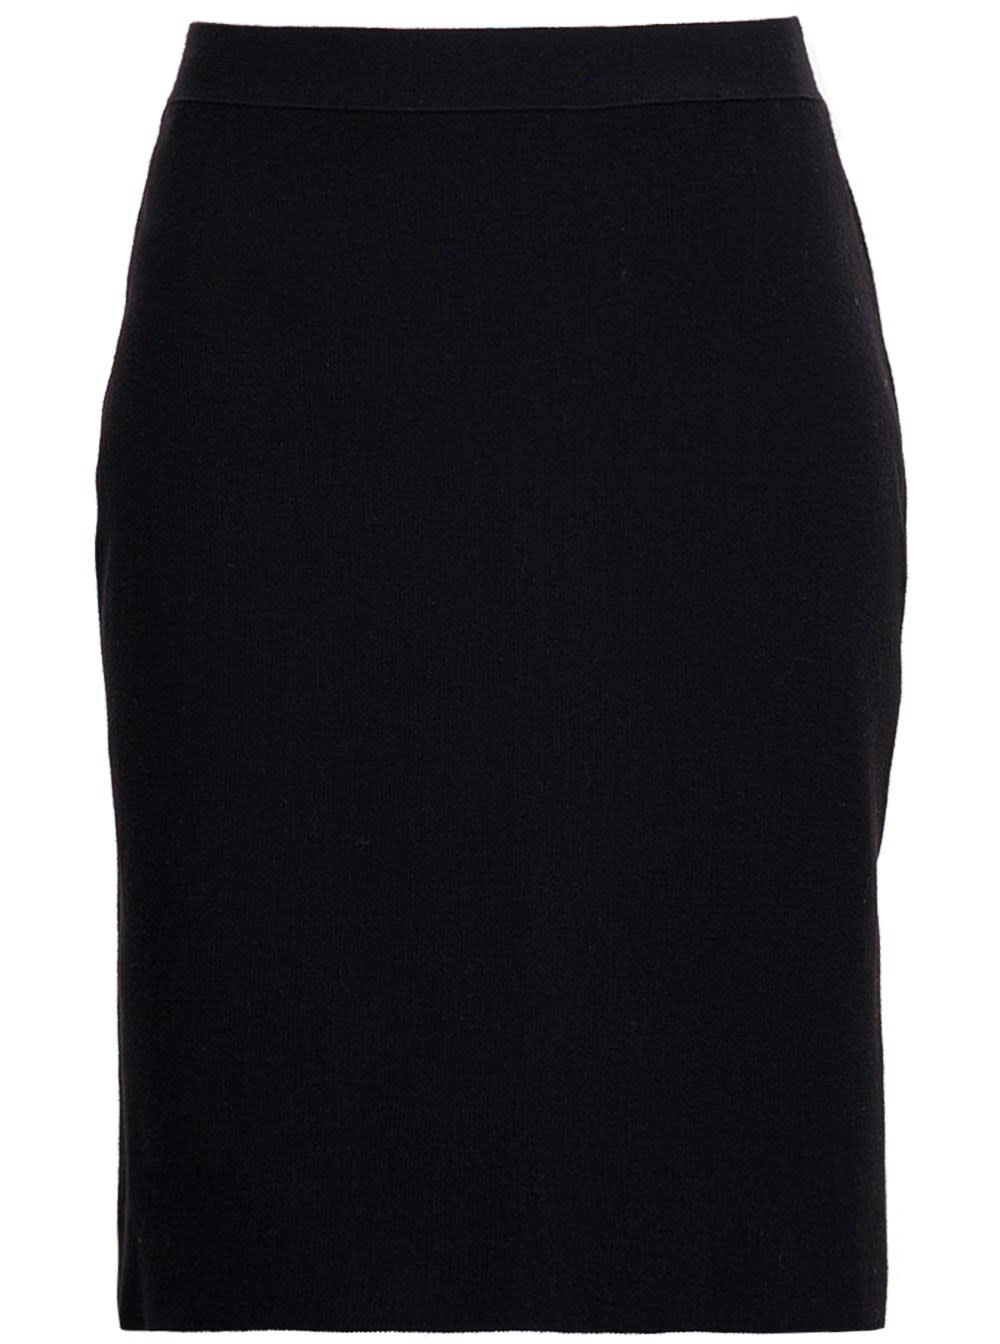 Bottega Veneta Black Wool Skirt With Back Flounce Detail